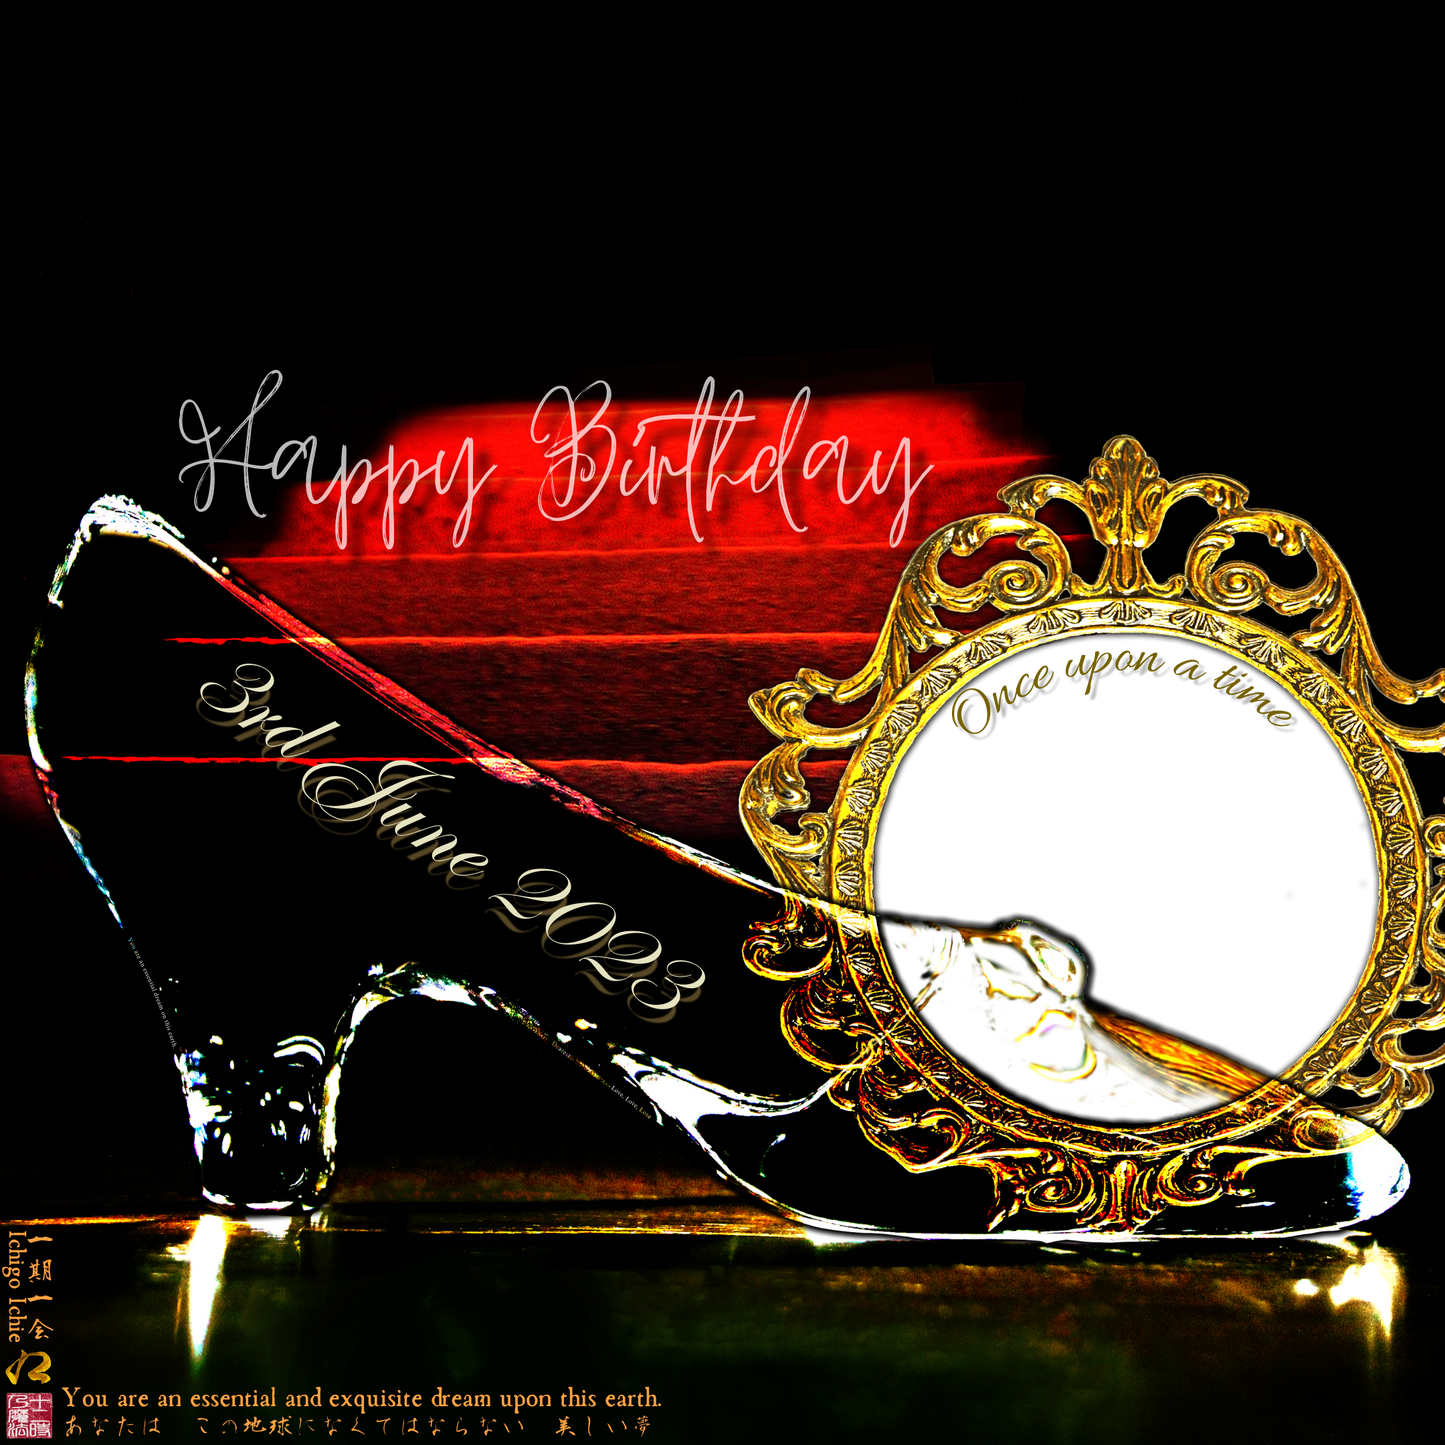 Happy Birthday Glass Slipper "Ichigo Ichie" 3rd June 2023 the Right (1-of-1) NFT Art